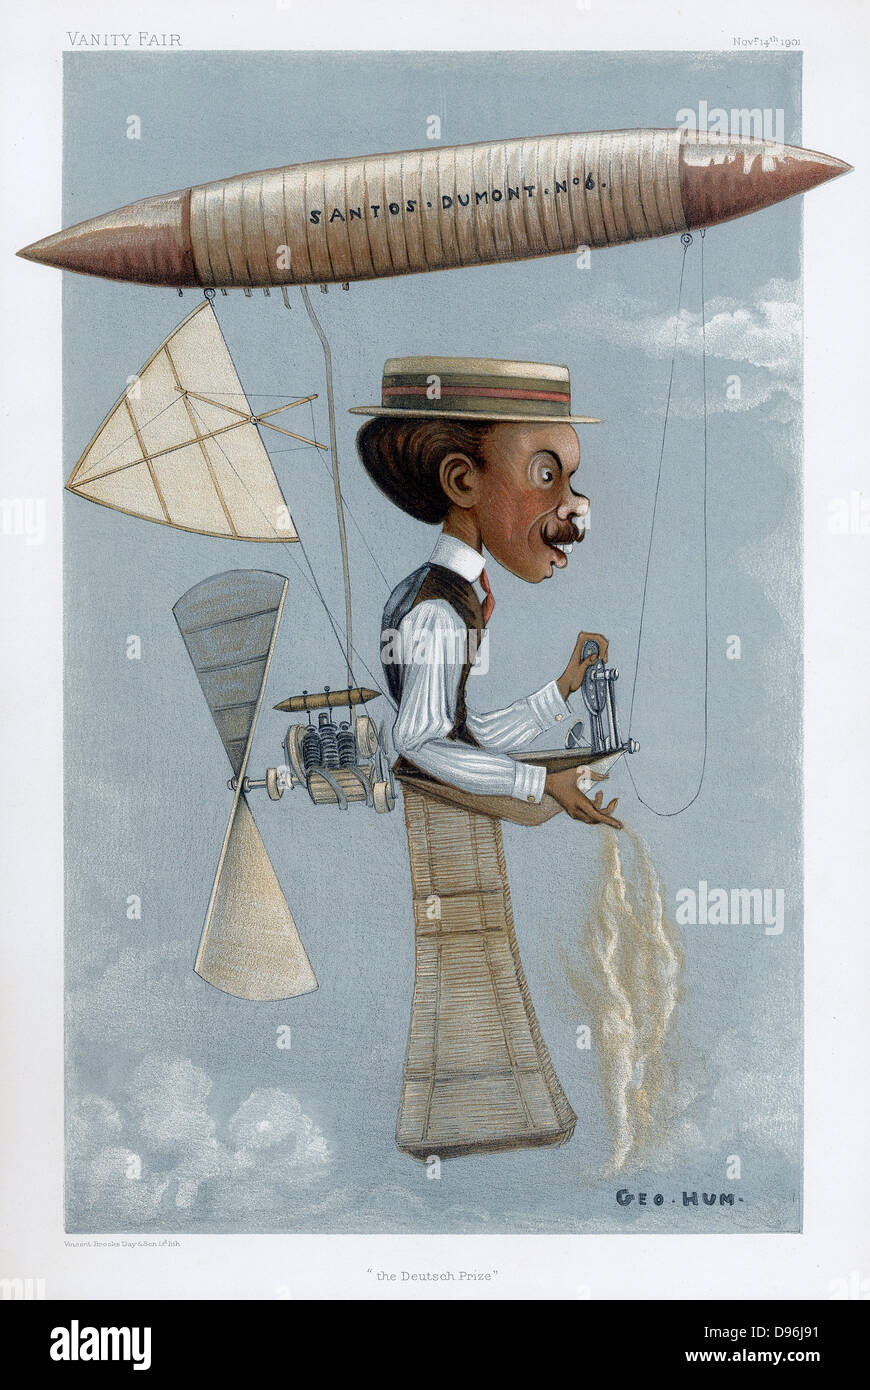 Alberto Santos-Dumont (1873-1932) Brasilianische Pionier der Luftfahrt. Hier in seinem Luftschiff (lenkbar) Nr. 6, in dem er die Deutsch-Preis 1901 gewonnen. Cartoon von 'Vanity Fair', London, 14. November 1901. Stockfoto